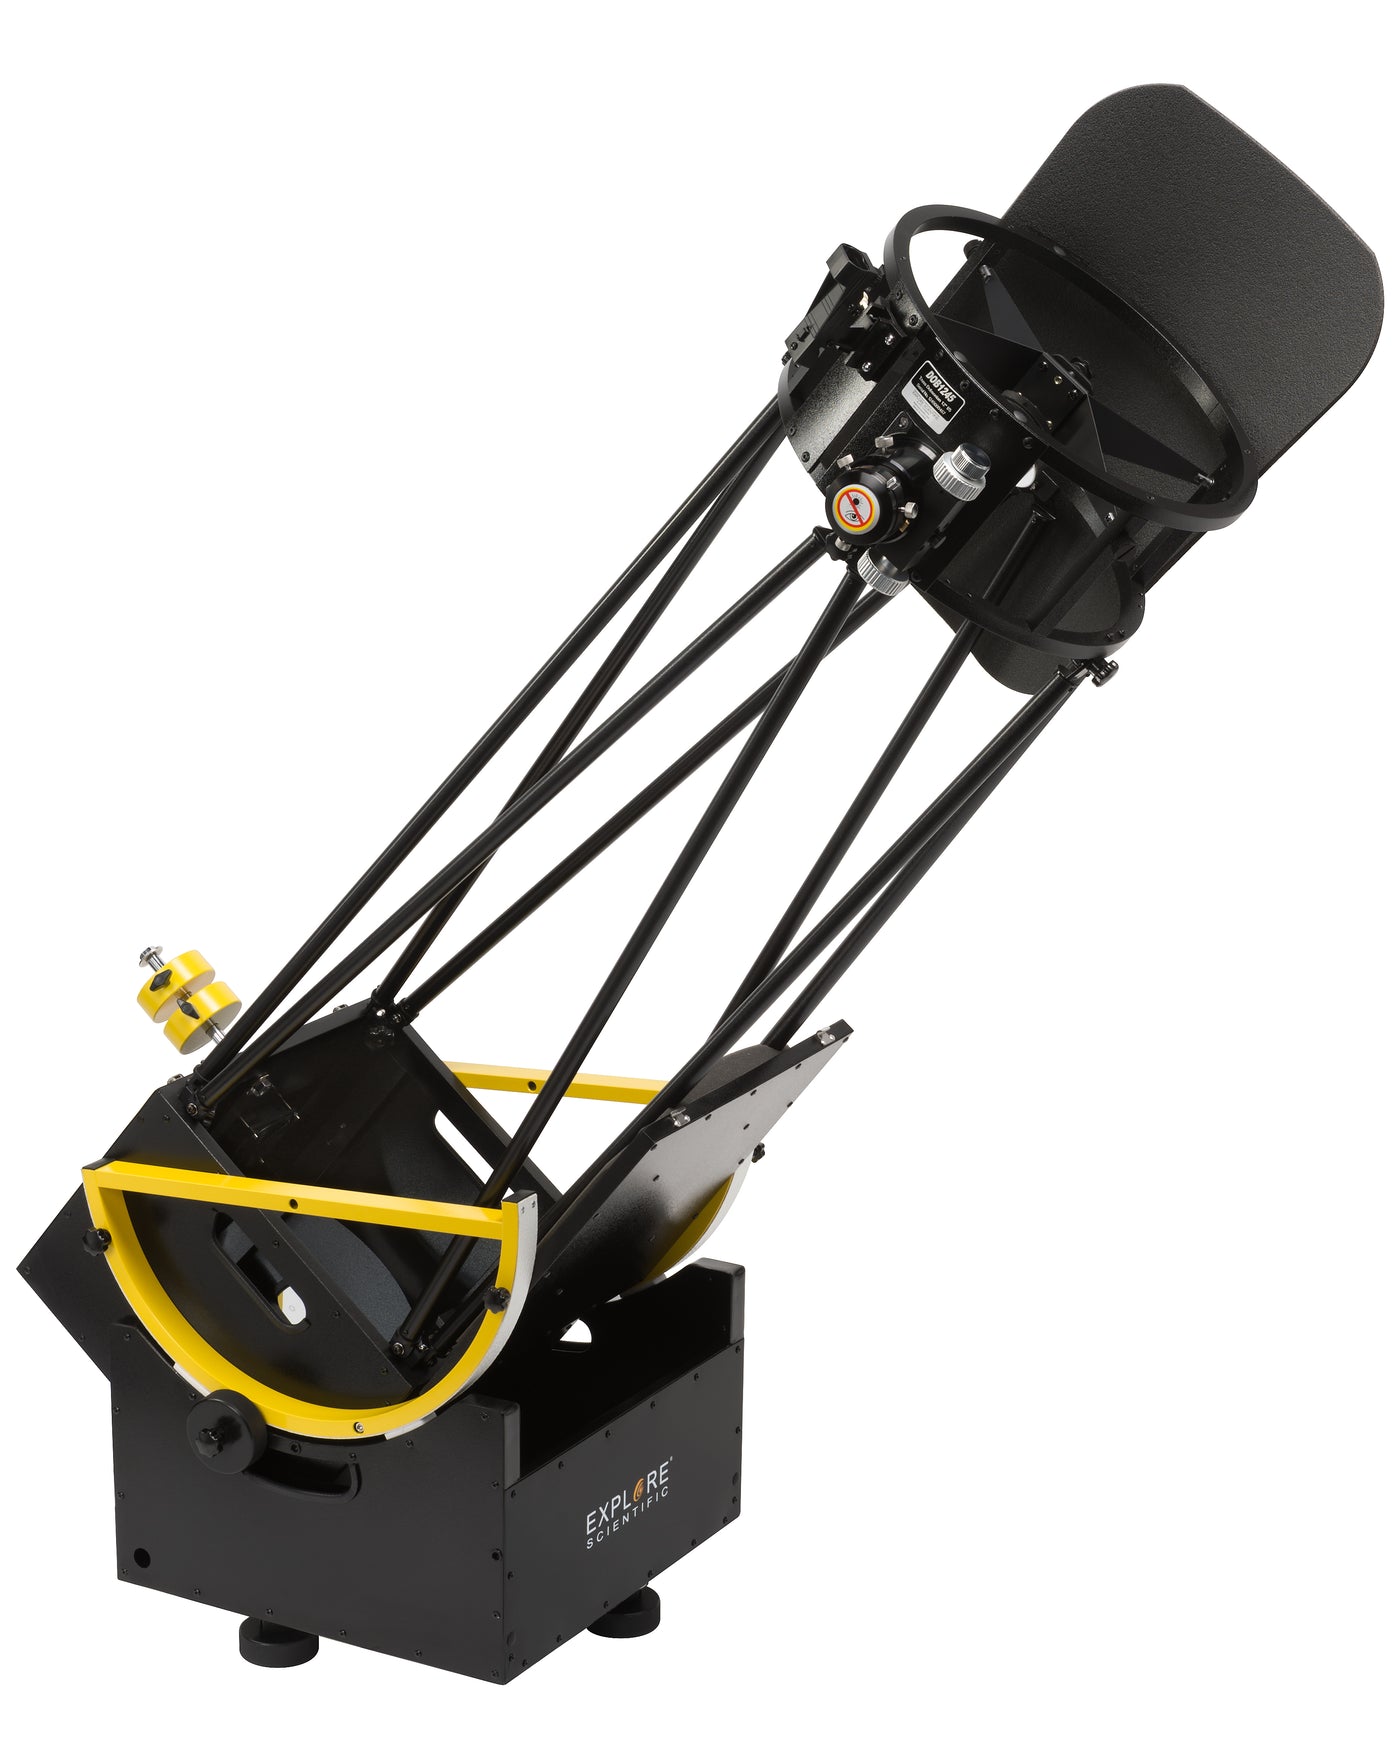 Explore Scientific 305 Dobsonian Telescope - 12"